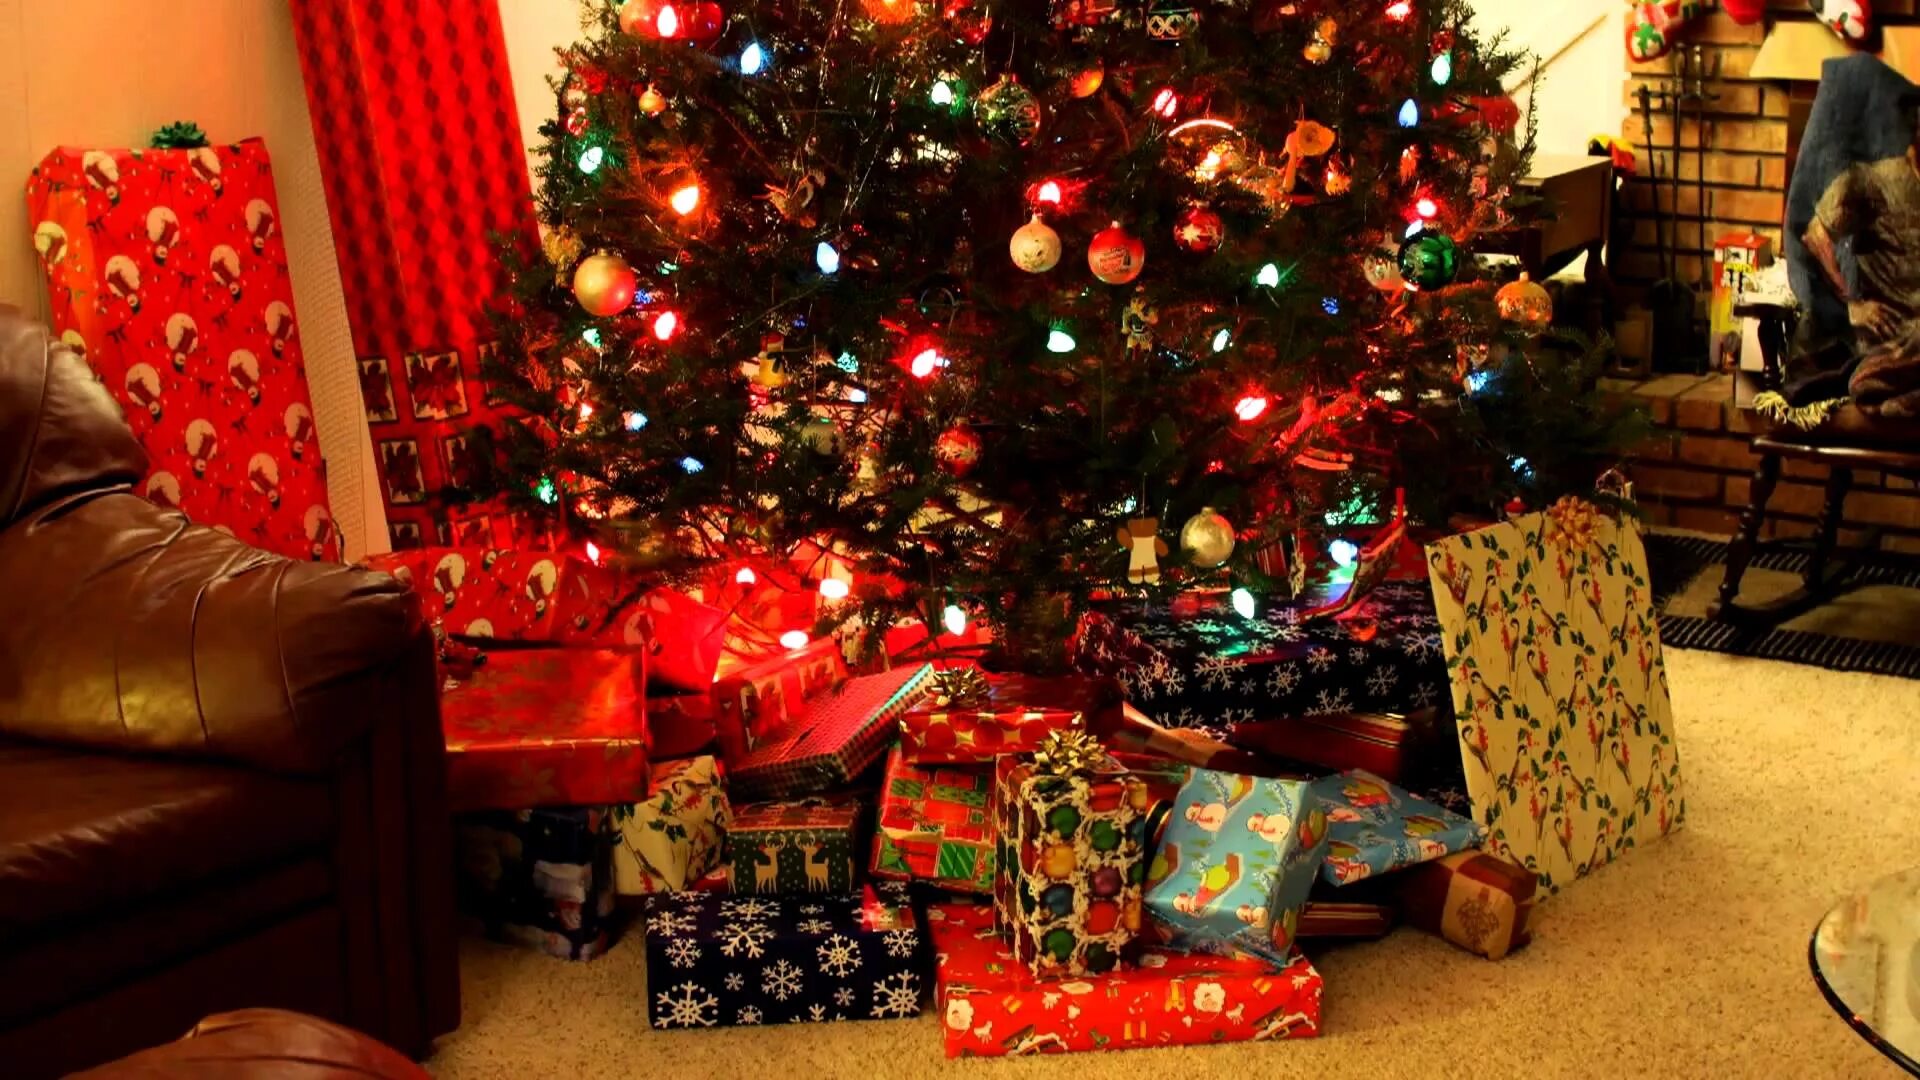 The under presents. Подарок на новый год с елкой. Новогодняя елка с подарками. Новый год подарки под елкой. Много подарков под елкой.